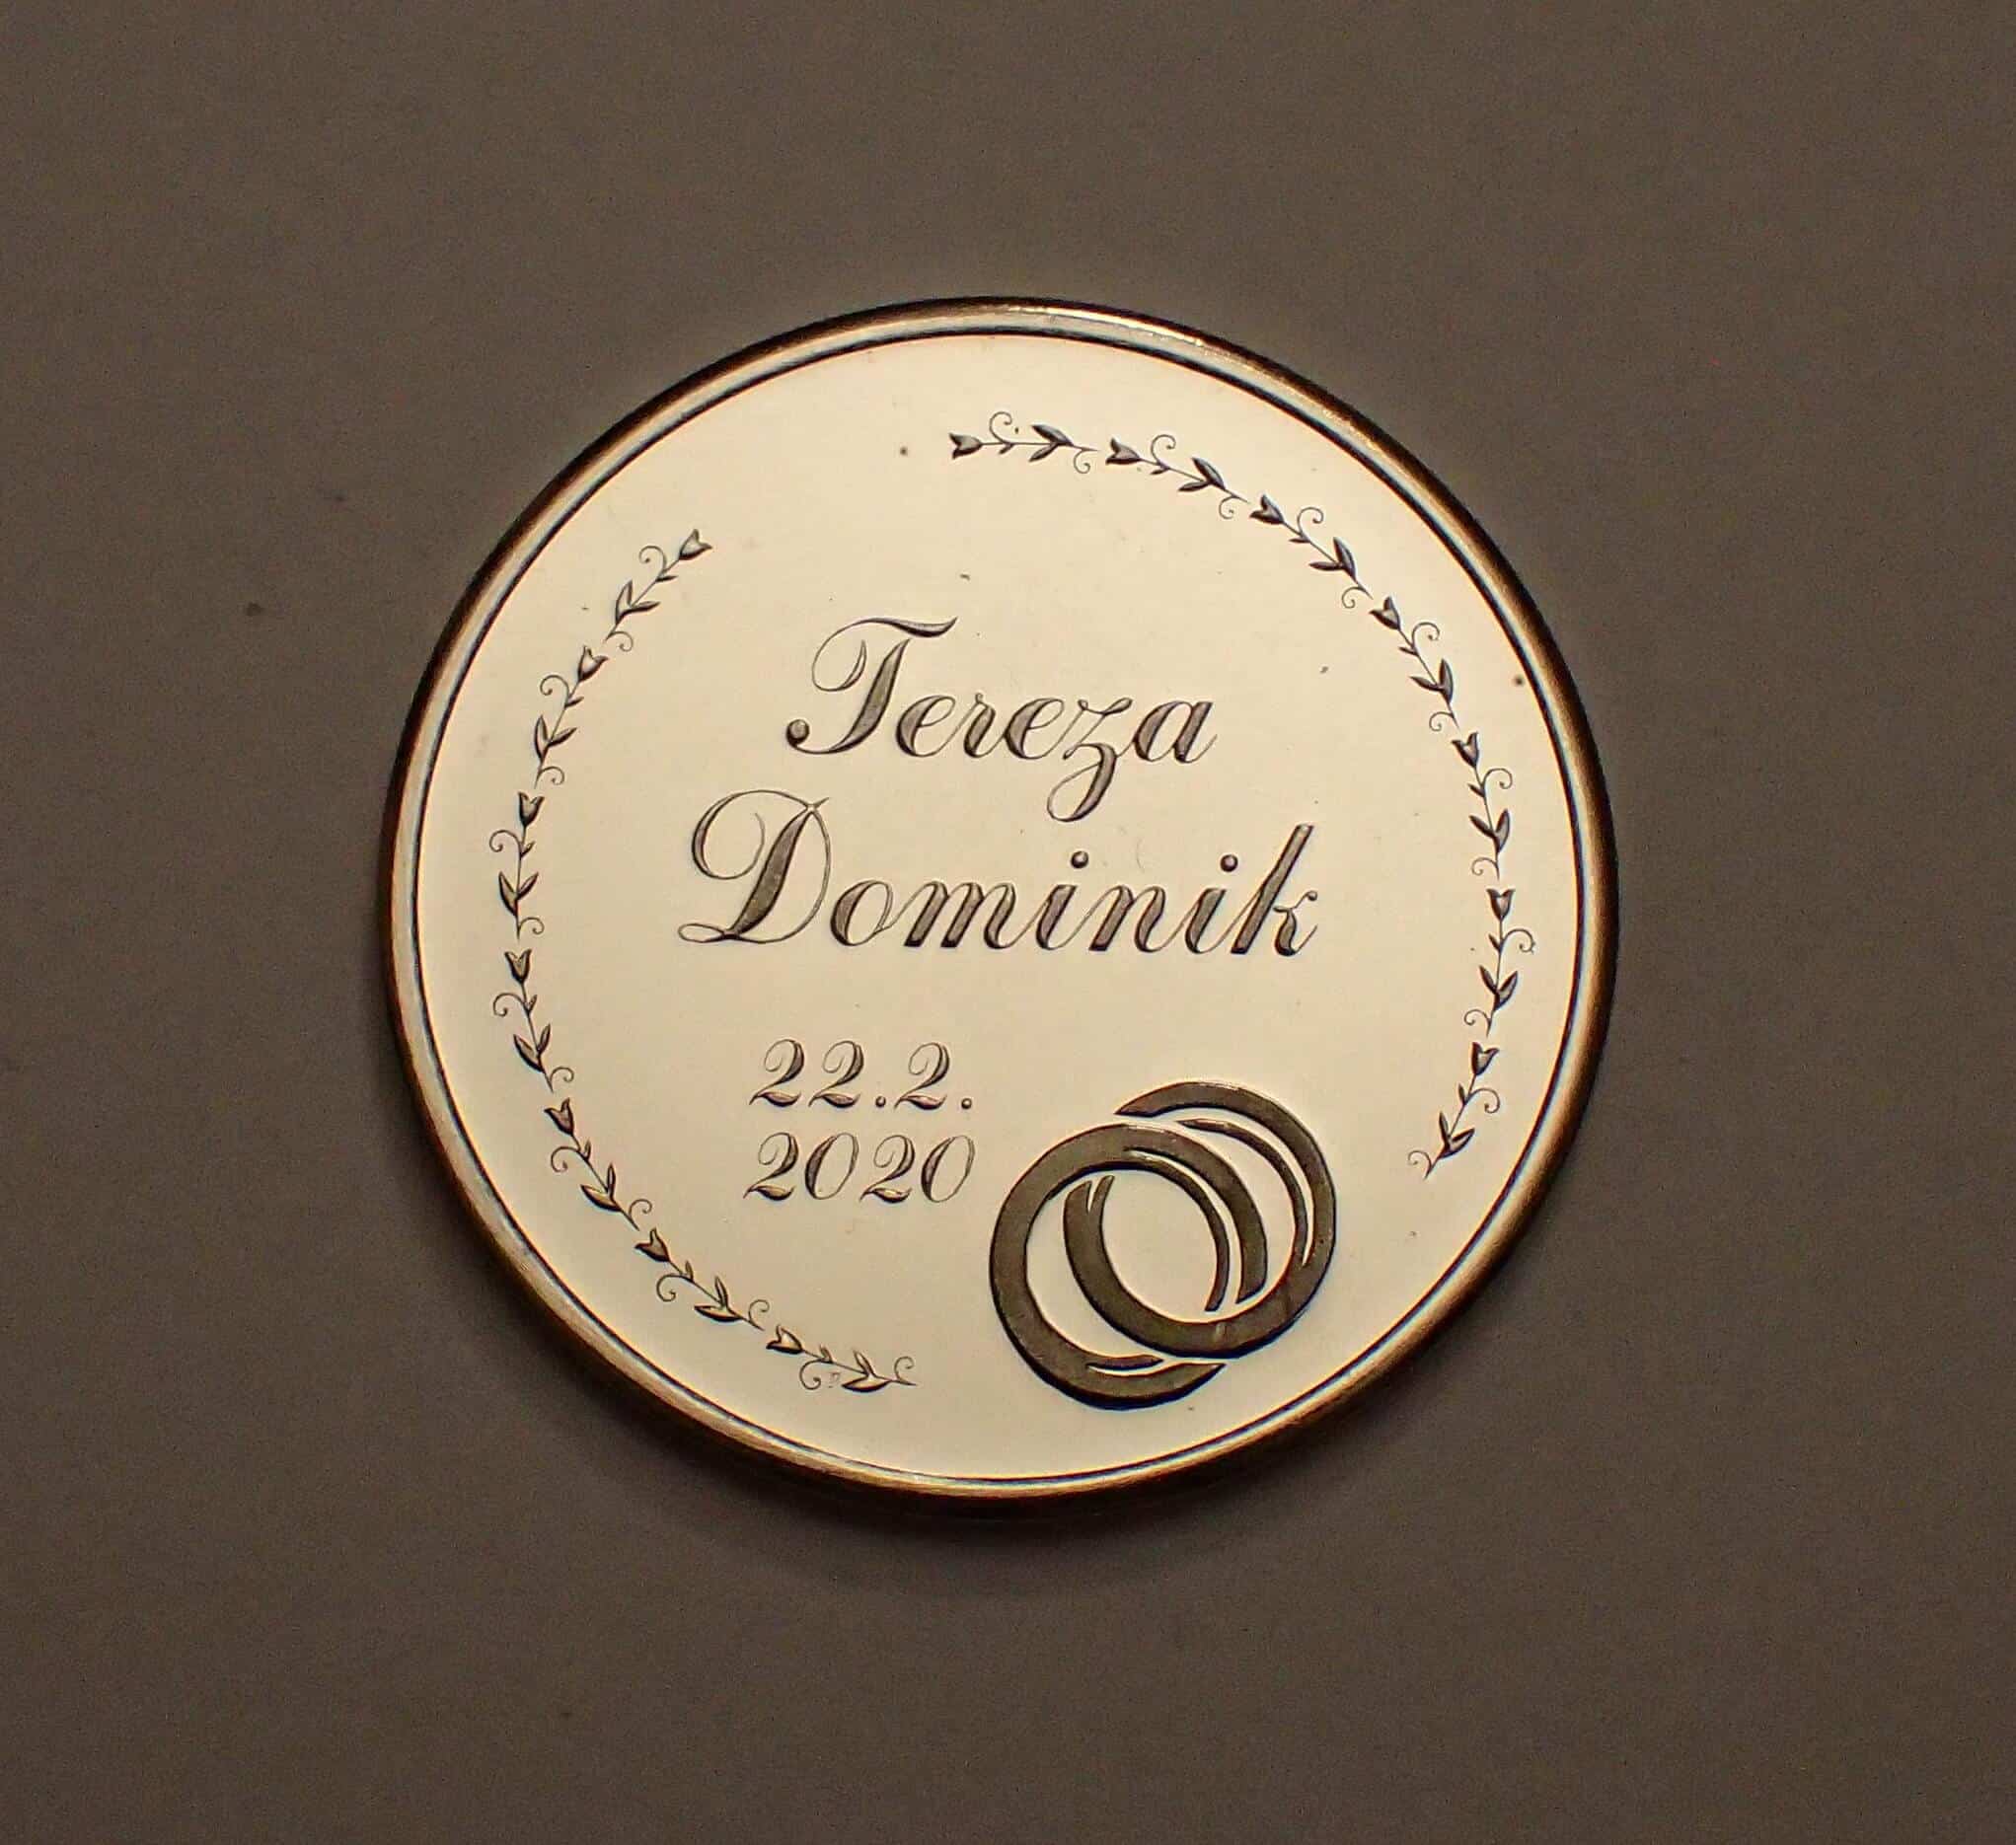 Svatební mince Tereza a Dominik 22.2.2020, přední strana